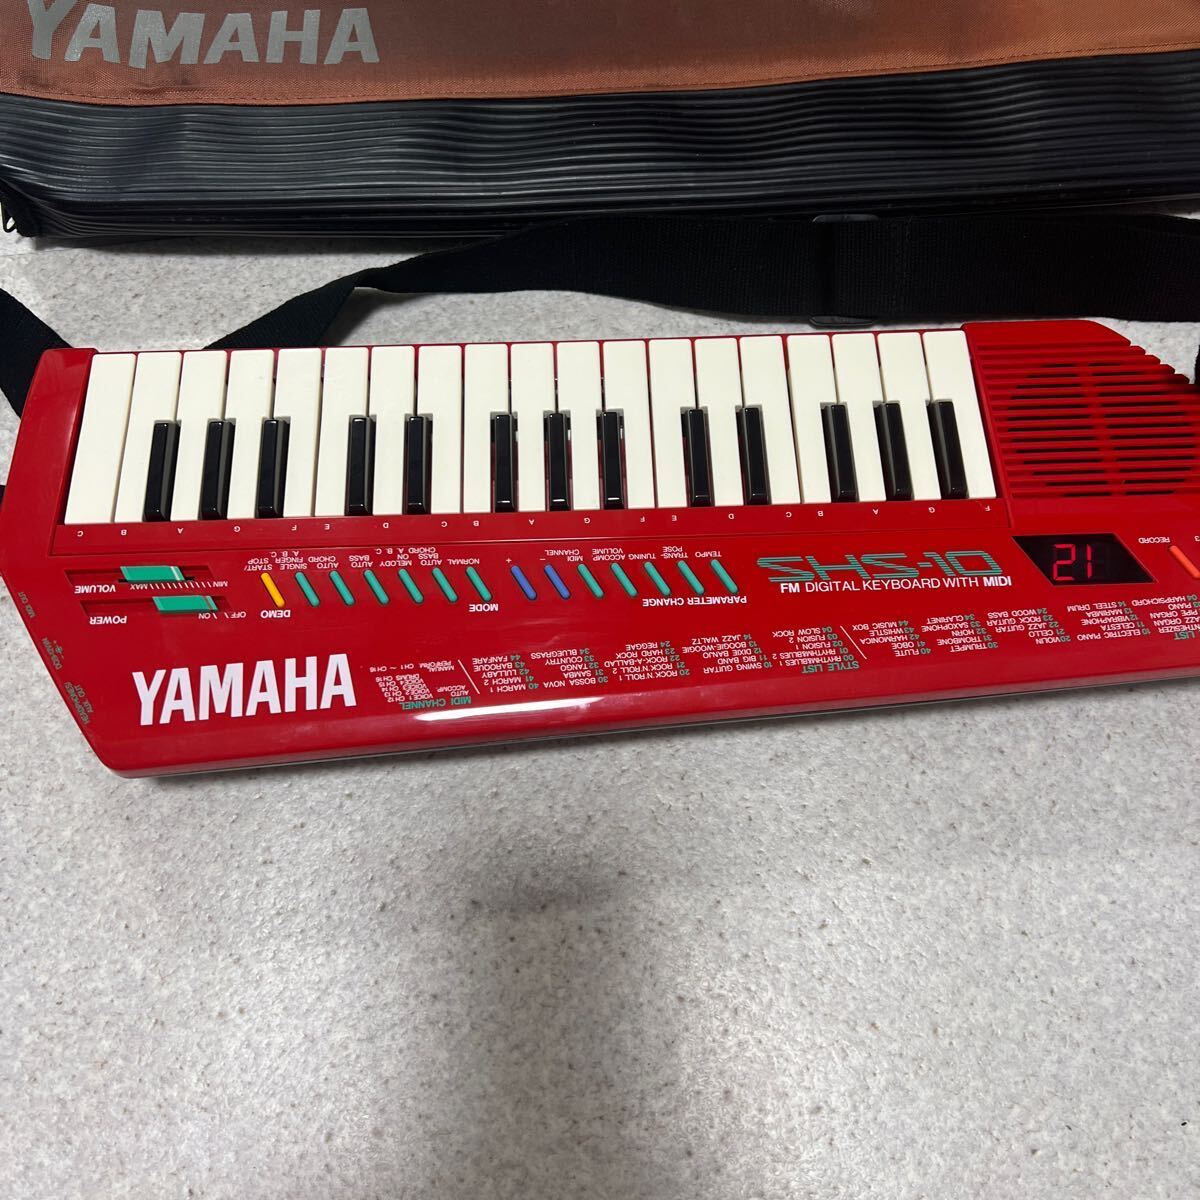 YAMAHA Yamaha плечо клавиатура SHS-10R красный клавишные инструменты мягкий чехол имеется электризация OK